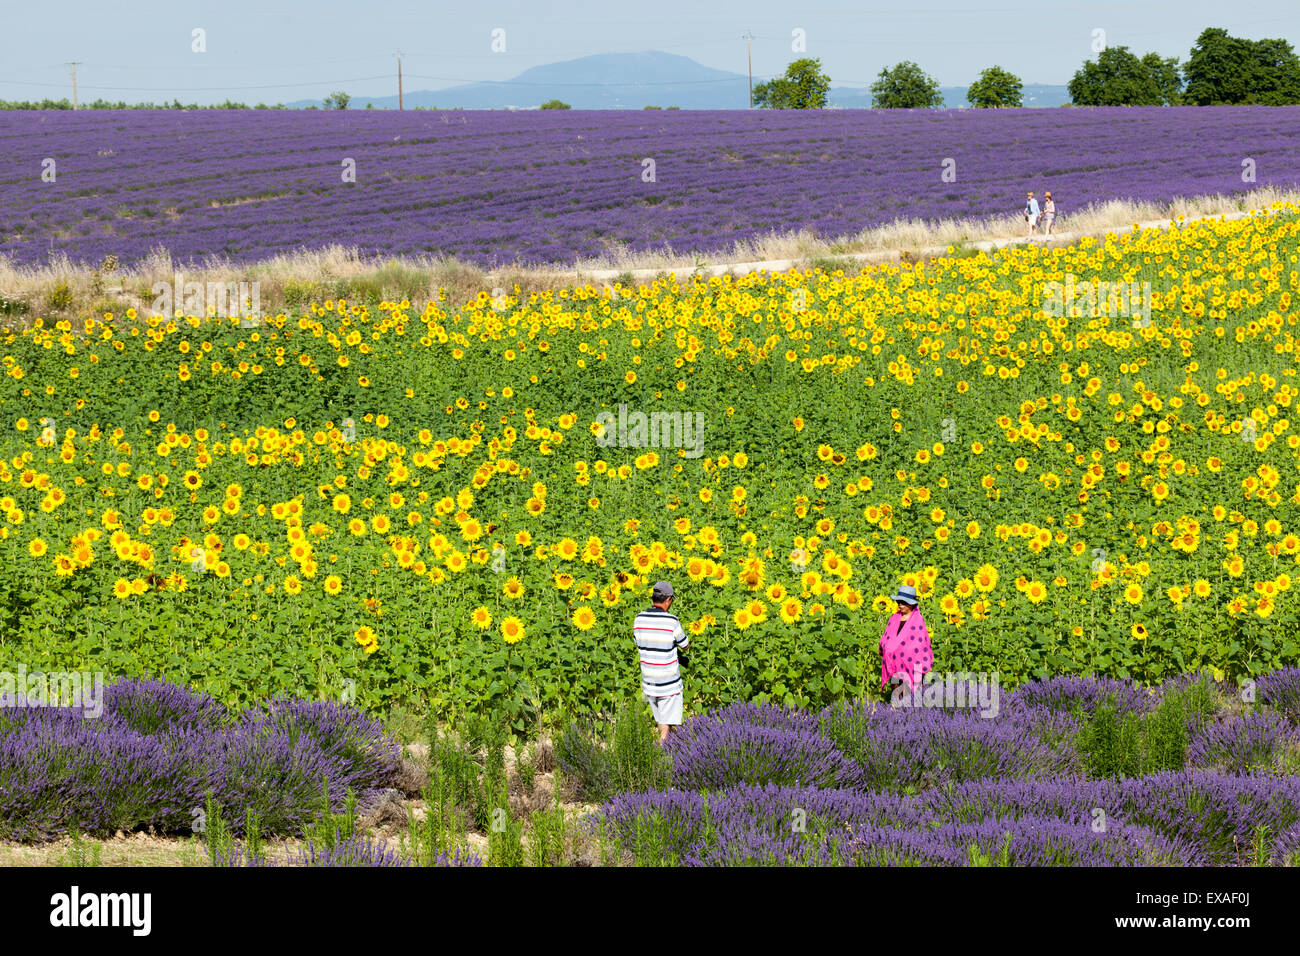 Un couple chinois touristiques dans les champs de tournesols et de lavande hybride (France). Couple de touristes chinois se photographiant. Banque D'Images